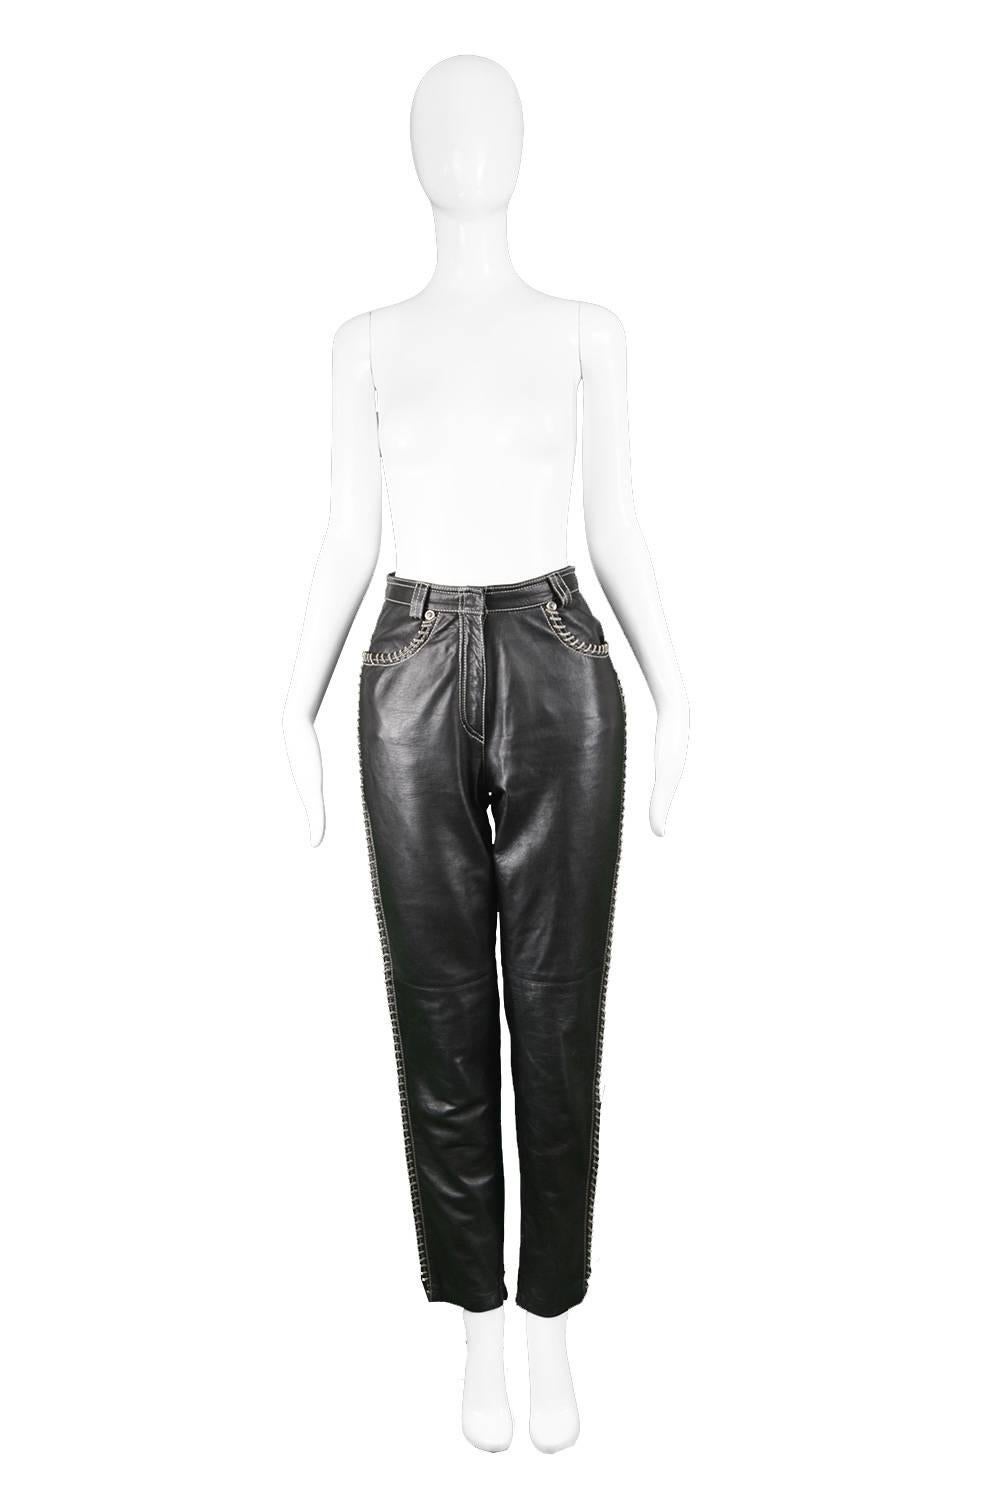 Gianni Versace Vintage Chain Embroidered Black Leather Trousers, 1990s

Estimated Size: UK 8/ US 2/ EU 36. Please check measurements. 
Waist - 26” / 66cm
Hips - 40” / 101cm
Rise - 12” / 30cm
Inside Leg - 30” / 76cm

Condition: Excellent Vintage